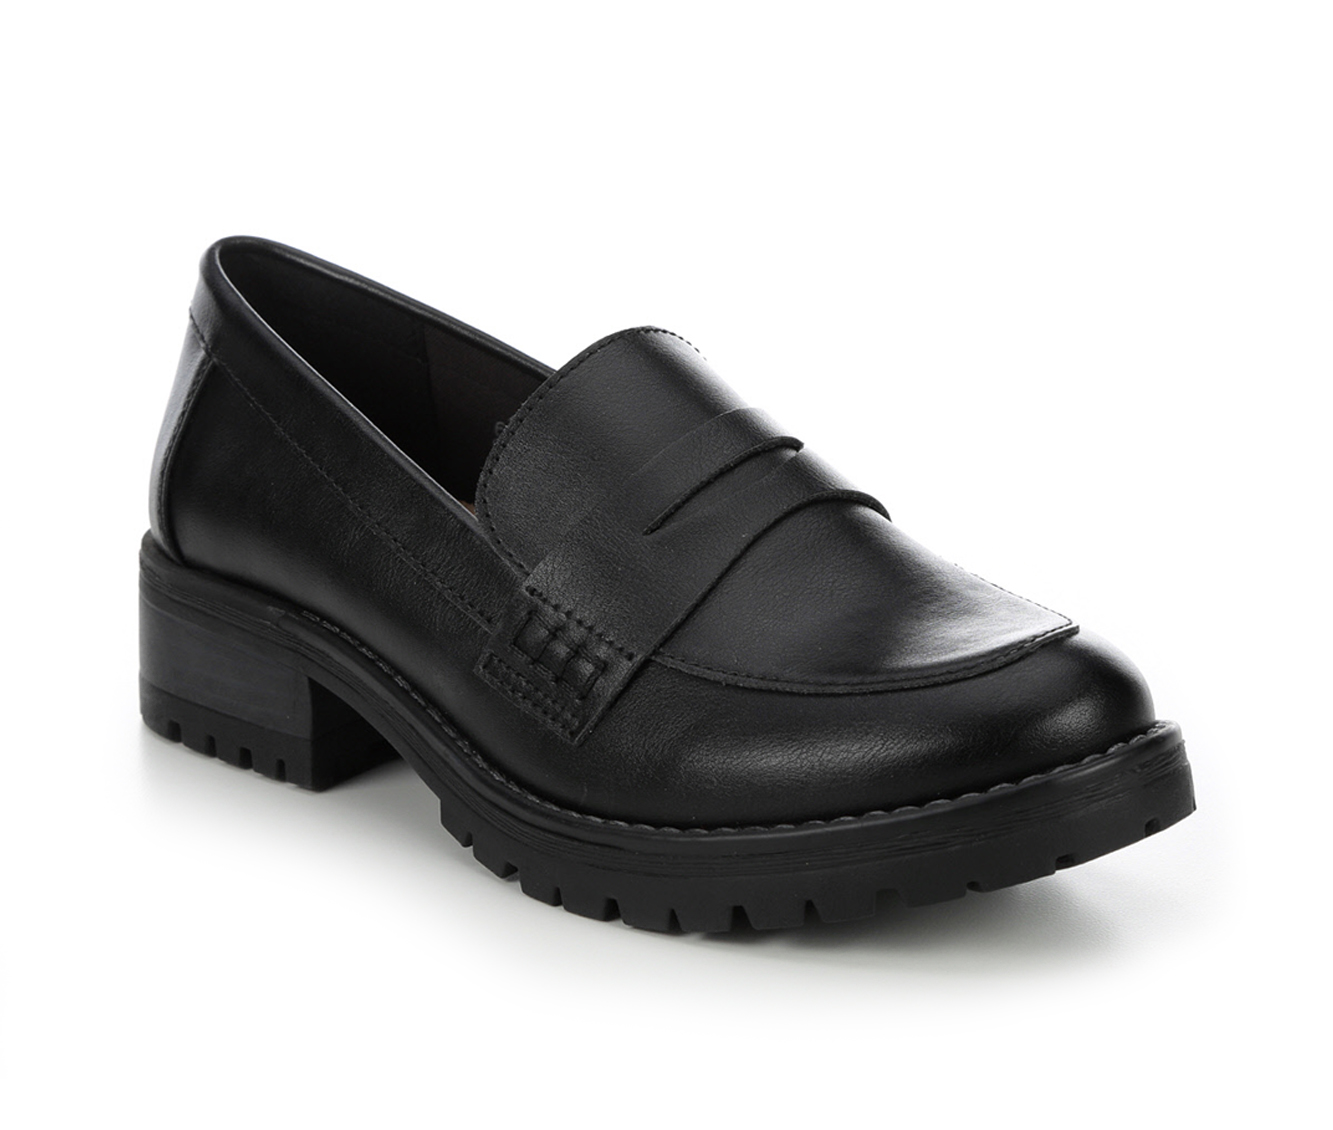 Women's Loafers & Oxfords | Shoe Carnival